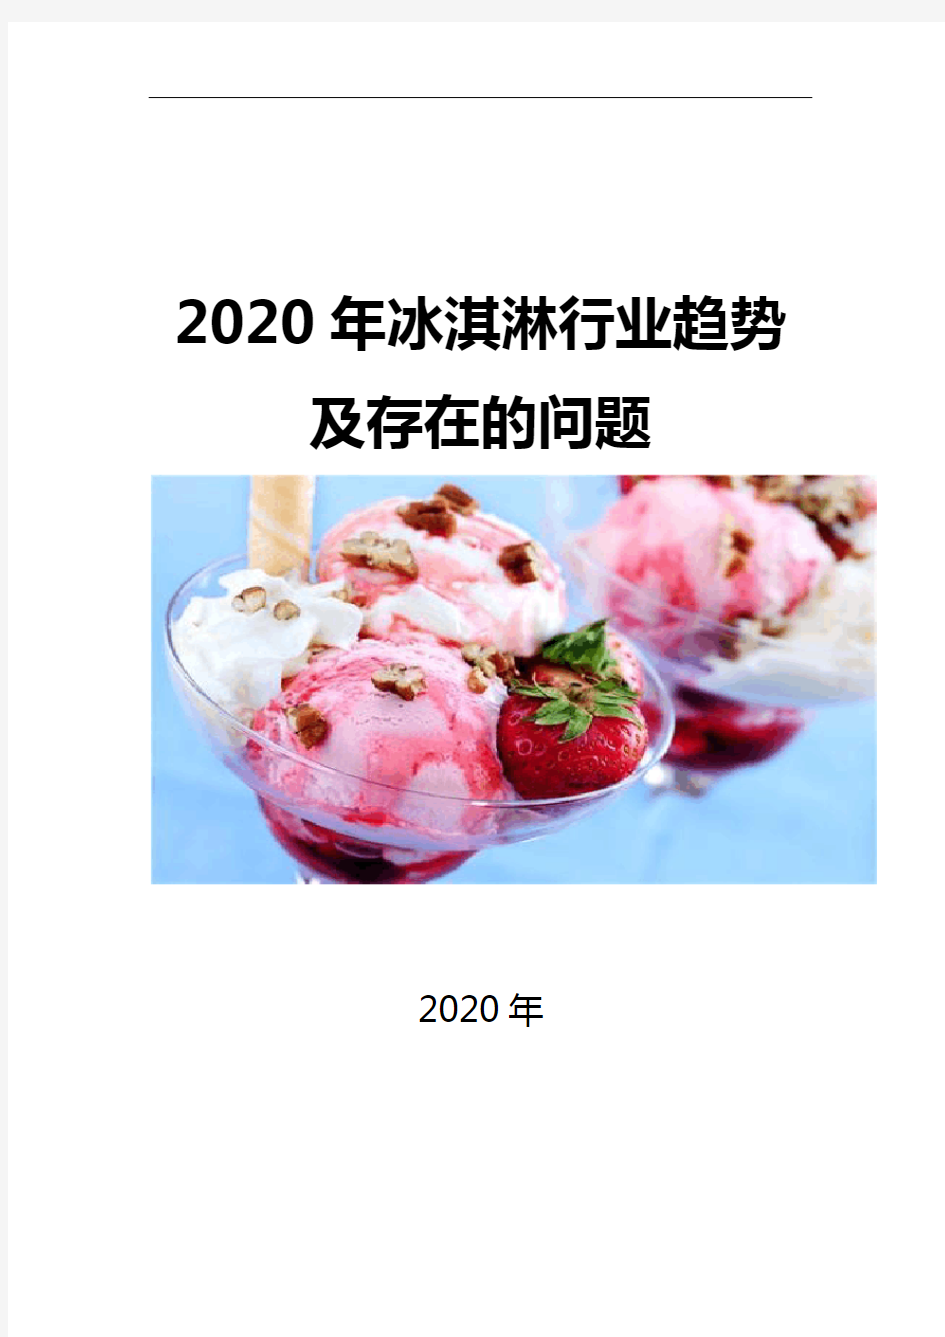 2020冰淇淋行业趋势及存在的问题